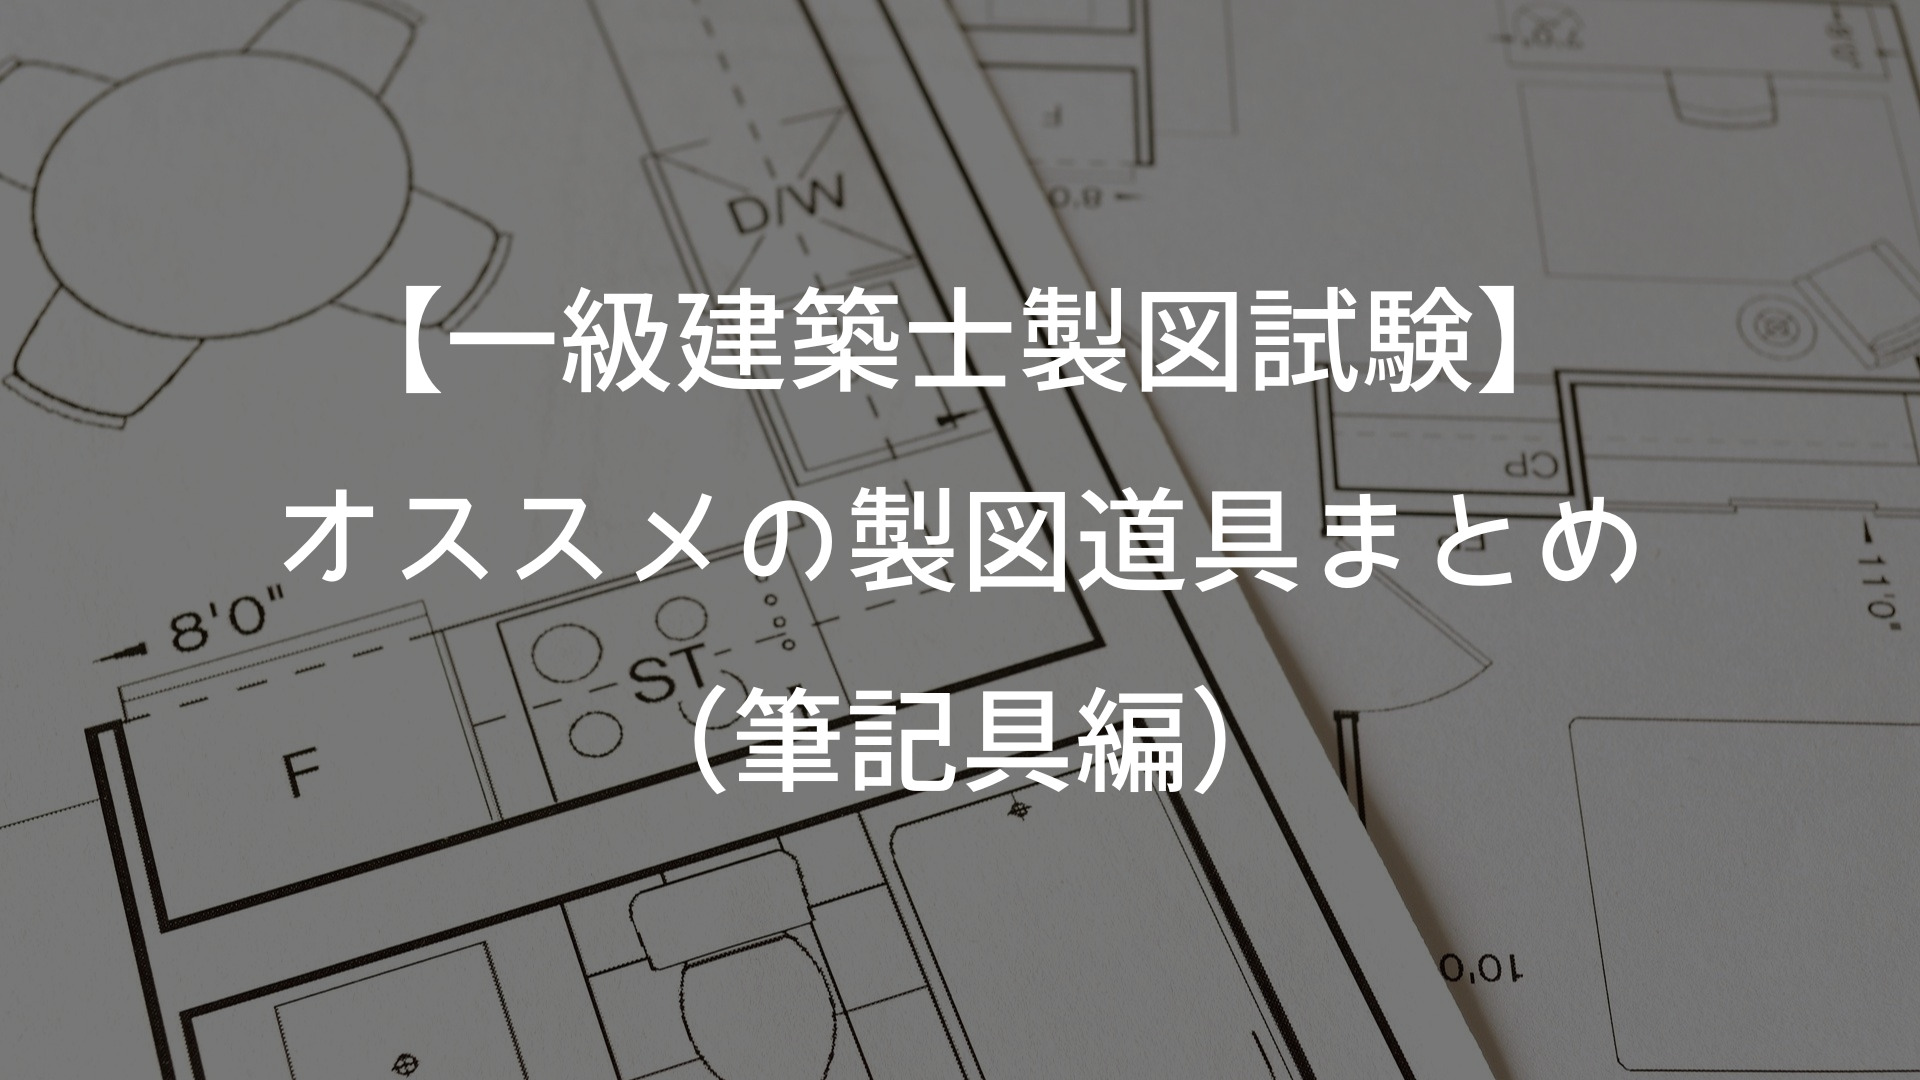 【一級建築士製図試験】オススメの製図道具まとめ　筆記用具編